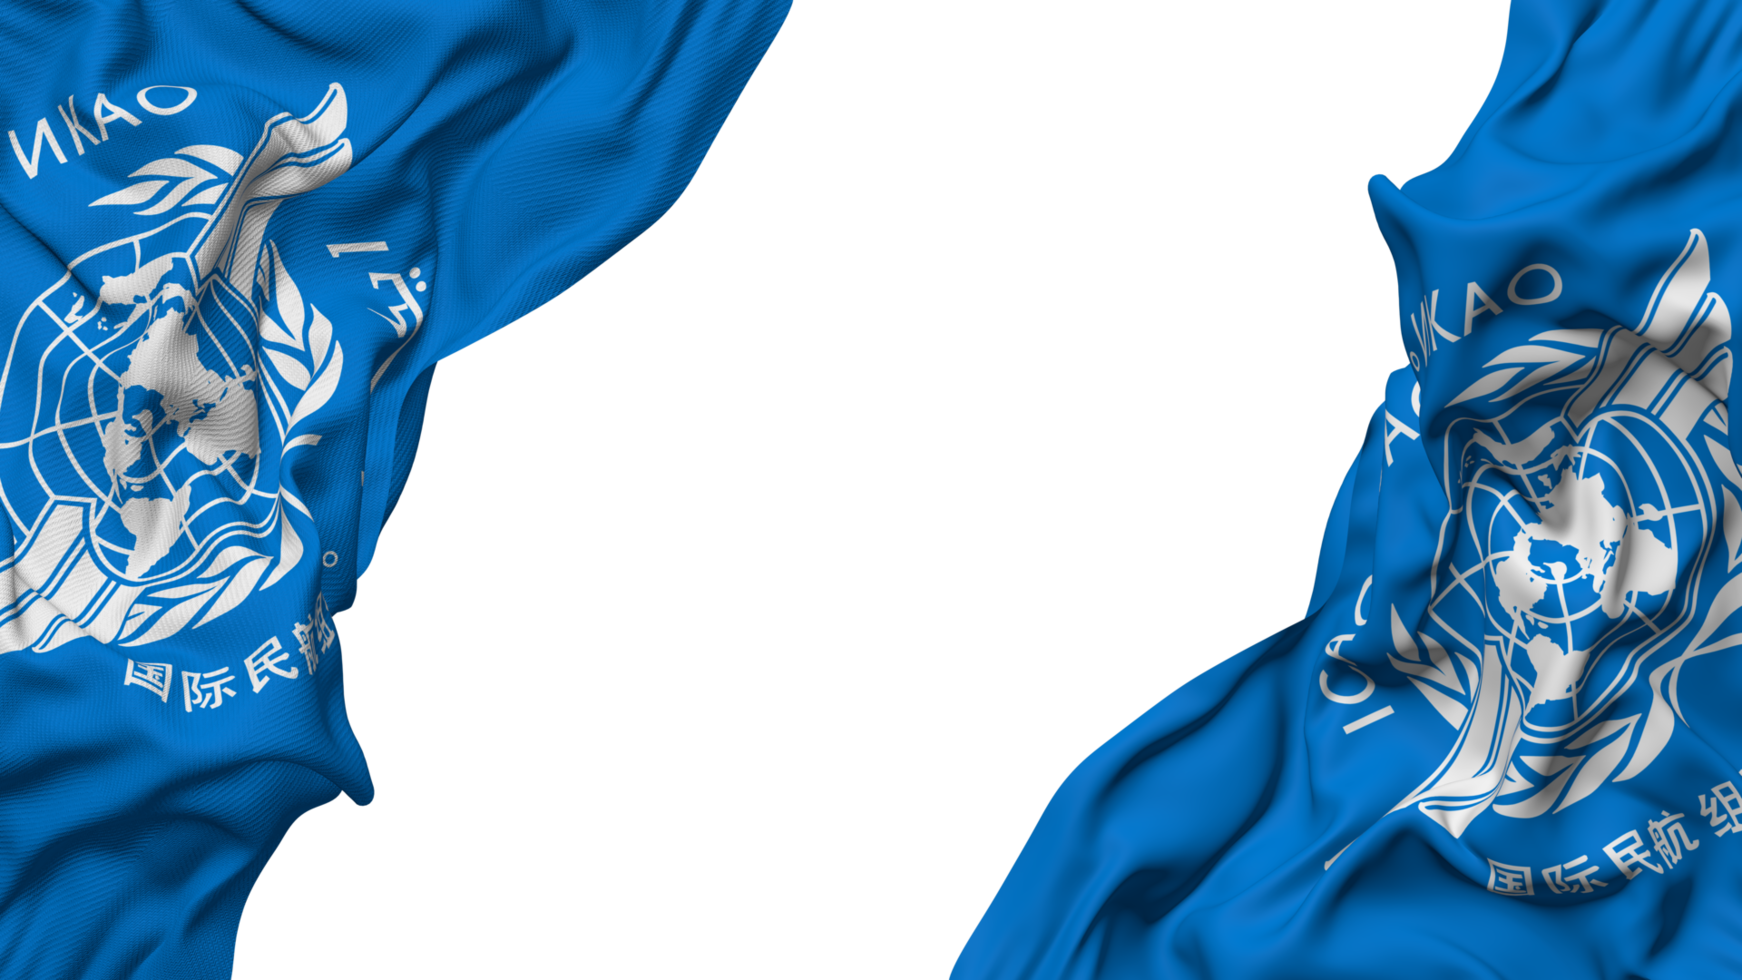 Internationale civiel luchtvaart organisatie, icao vlag kleding Golf banier in de hoek met buil en duidelijk textuur, geïsoleerd, 3d renderen png